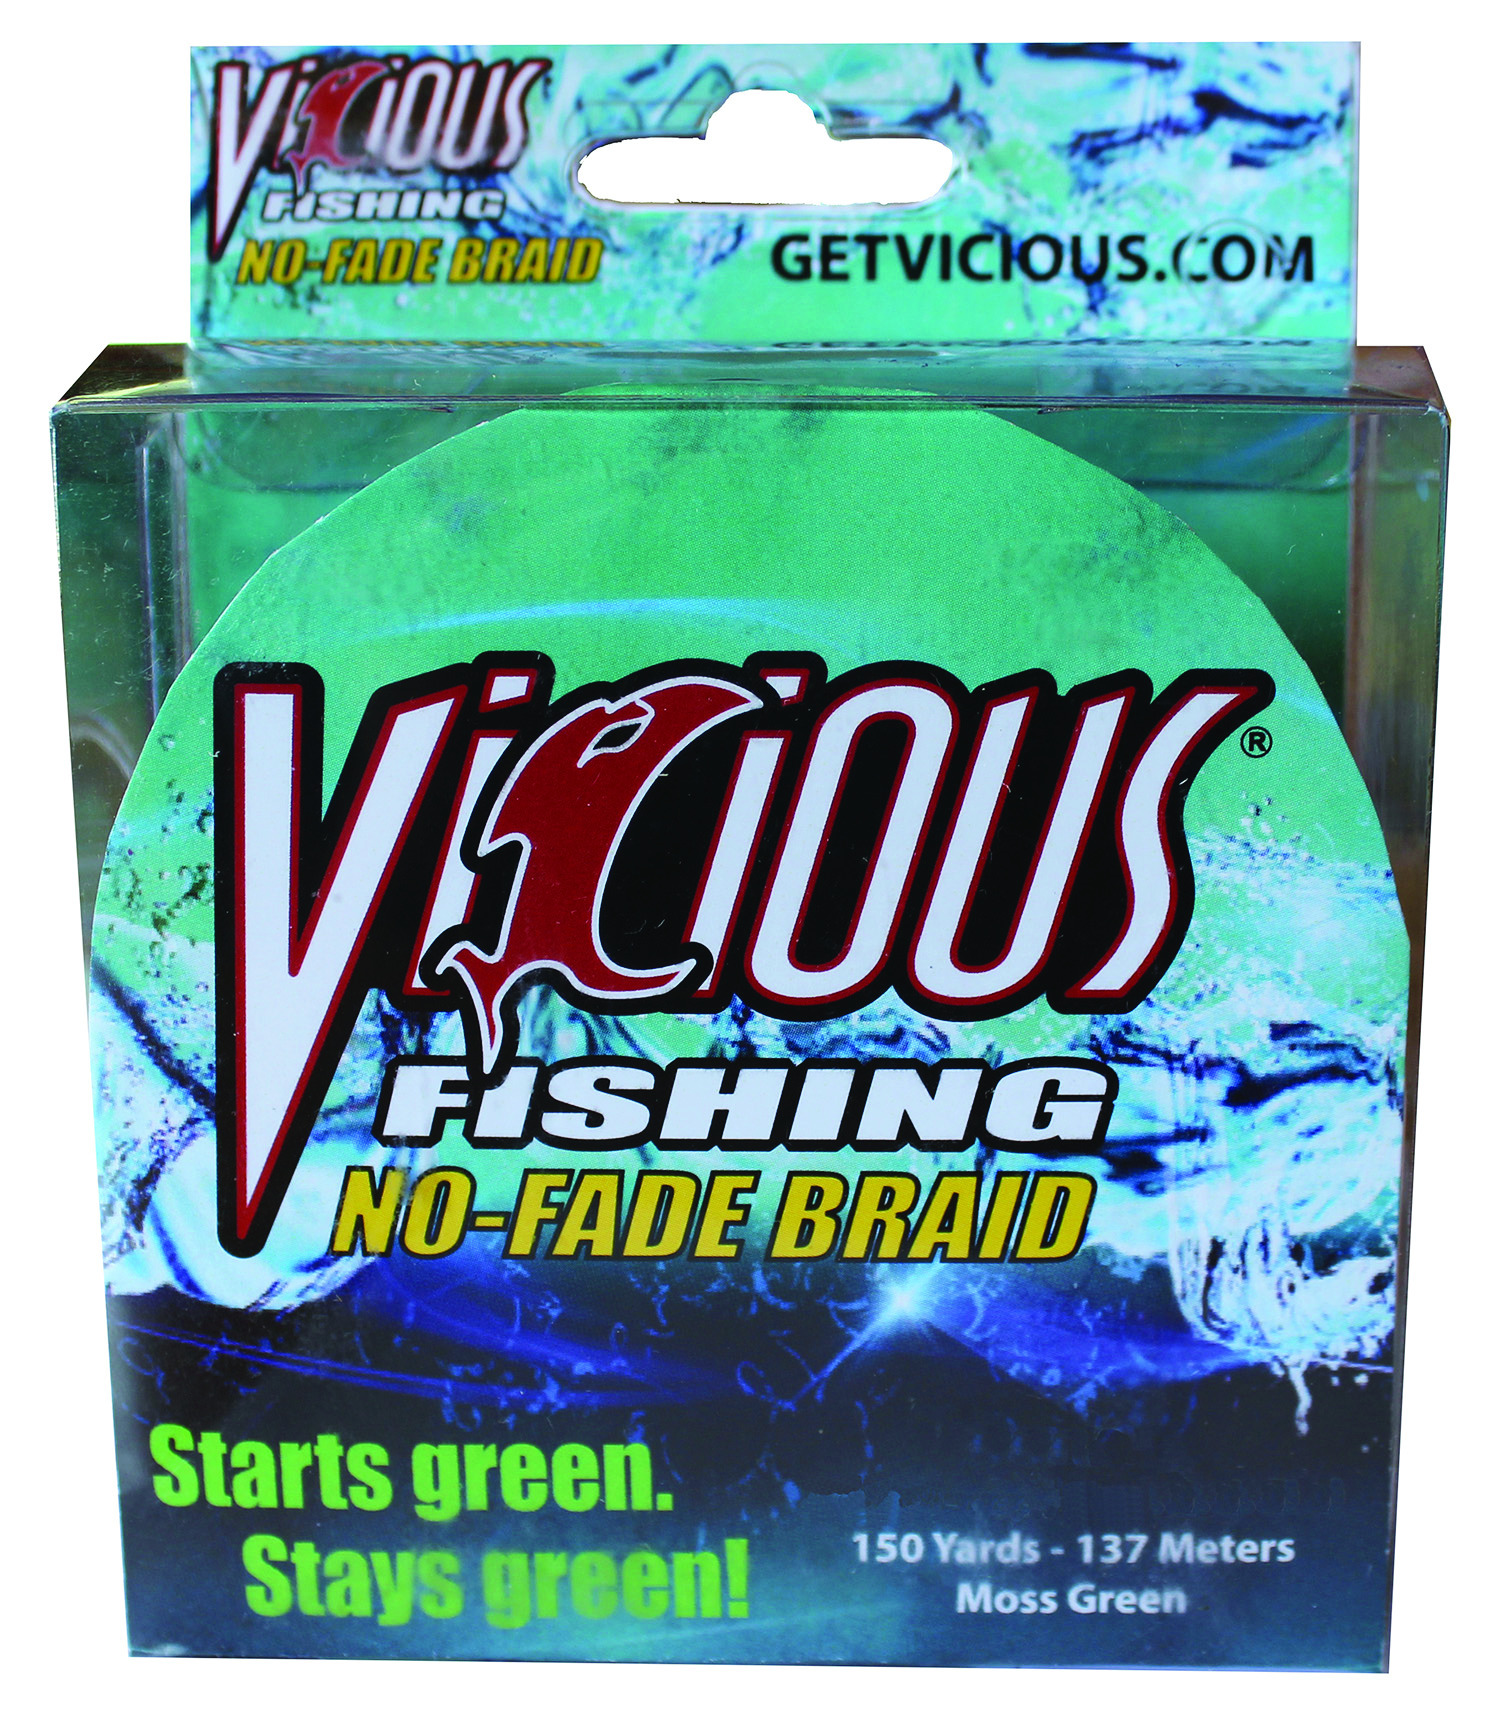 Vicious Fishing No-Fade Braid Fishing Line